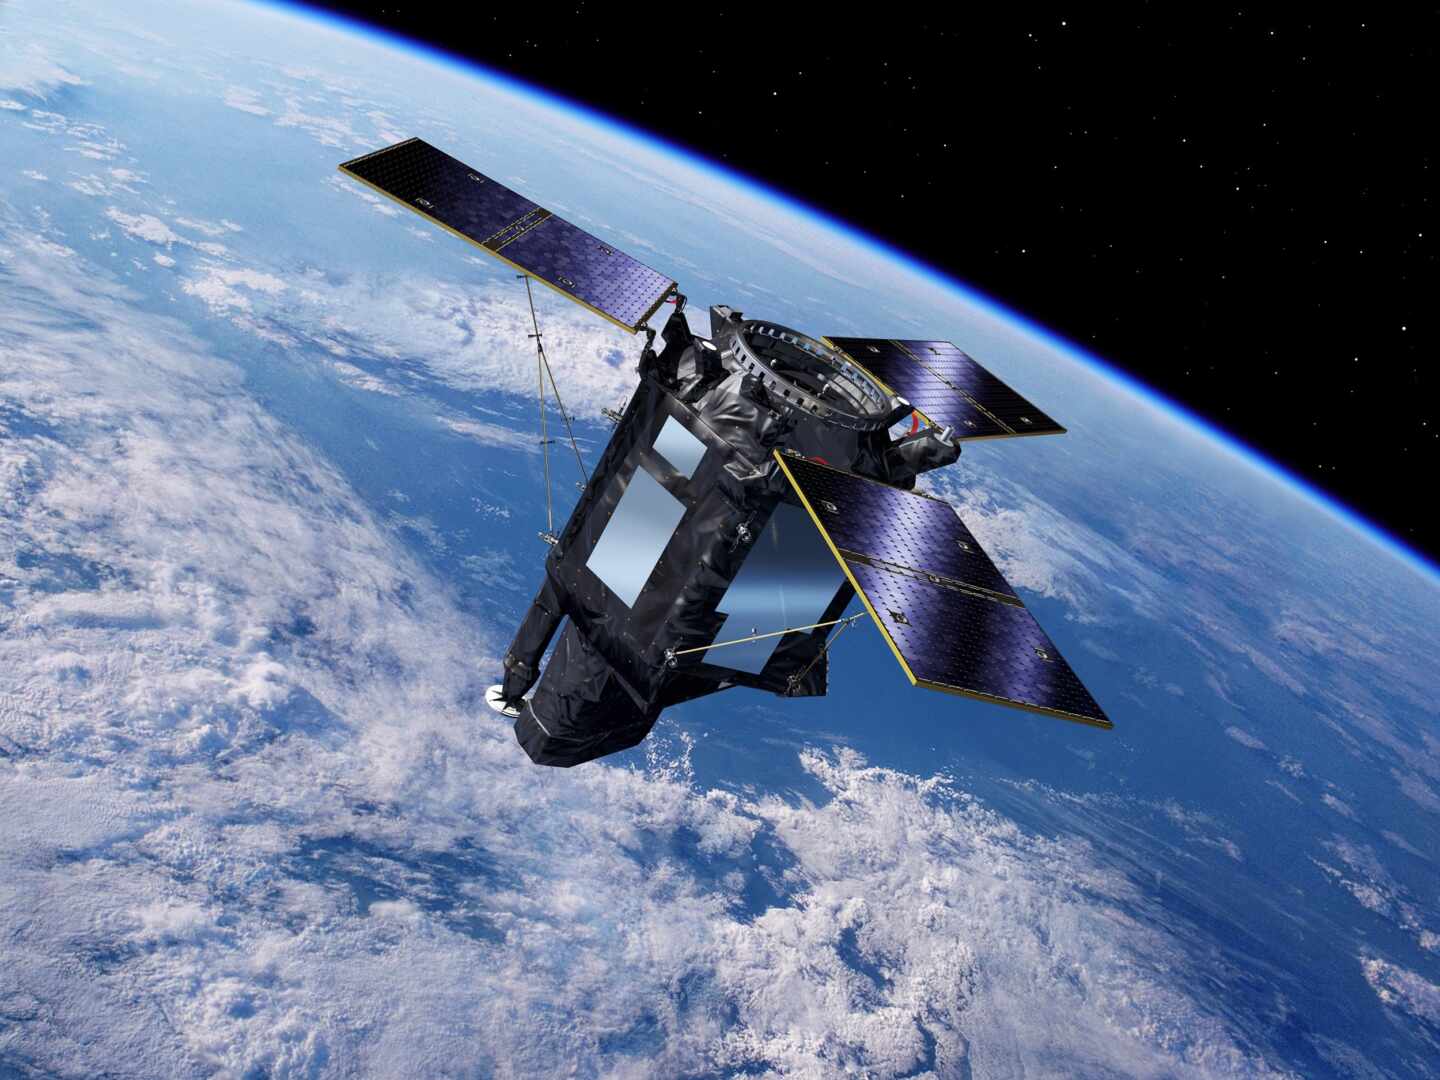 Un "fallo humano" y una misión espacial sin seguro: así fracasó el satélite español Ingenio